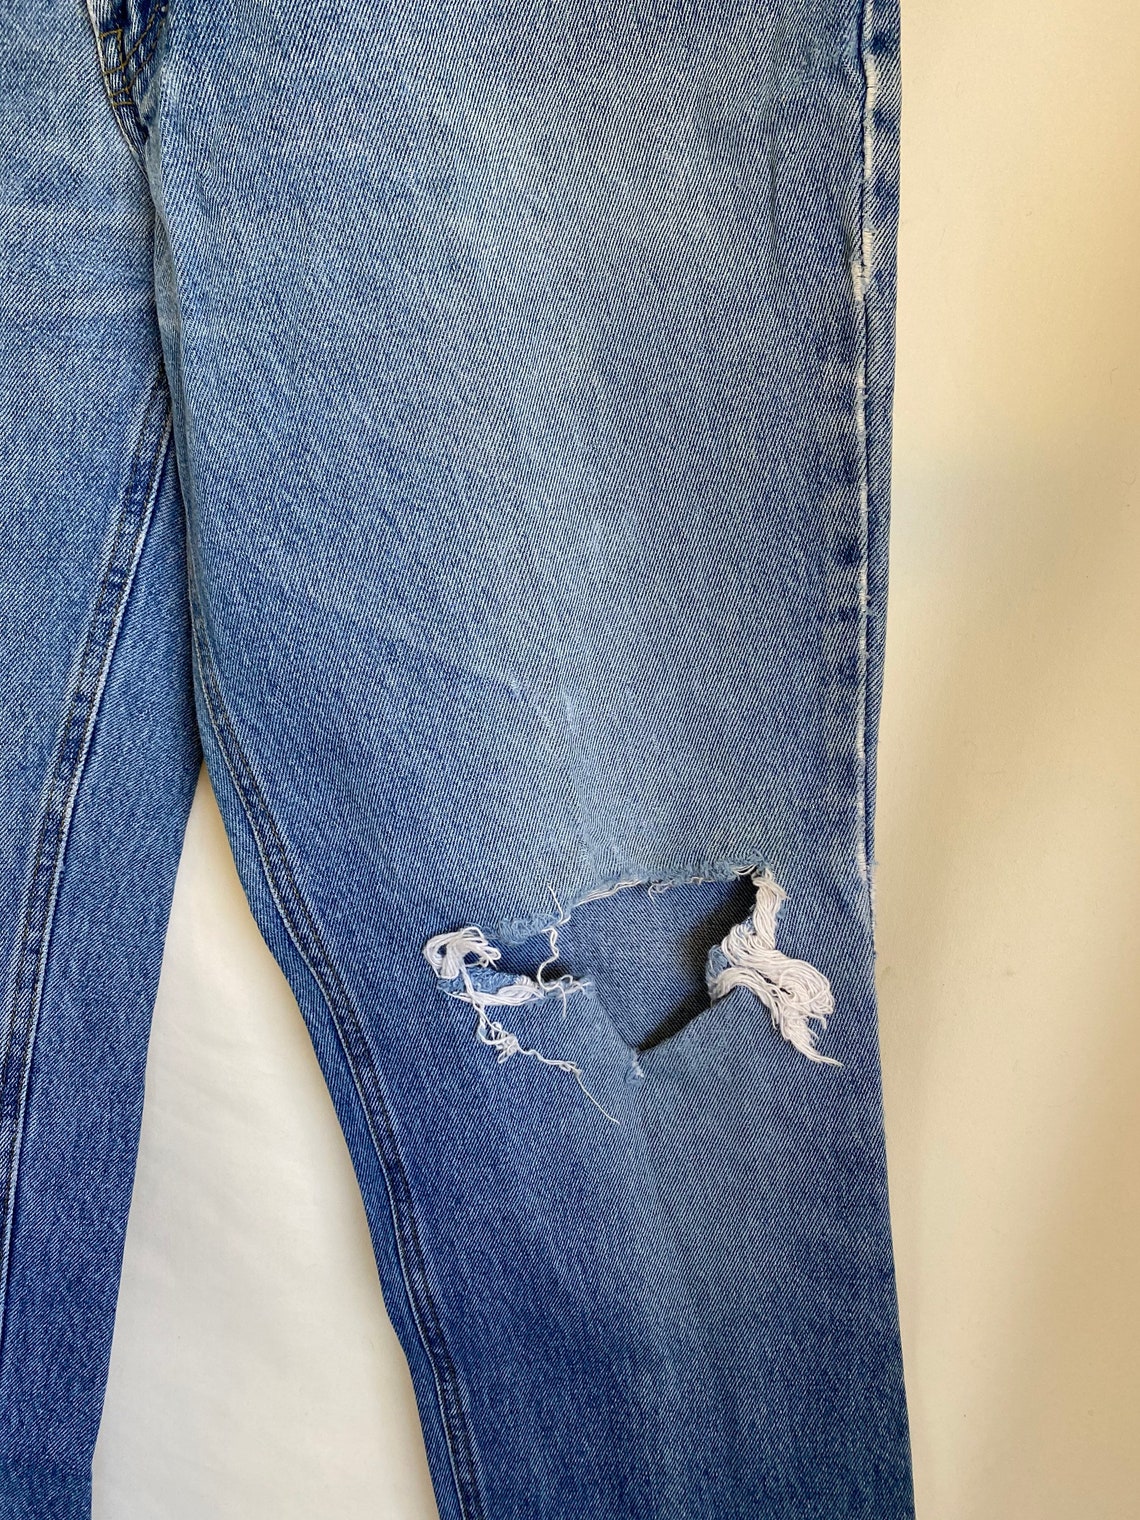 Vtg 80s Distressed Bugle Boy Jeans 705s in Light Wash Denim. | Etsy